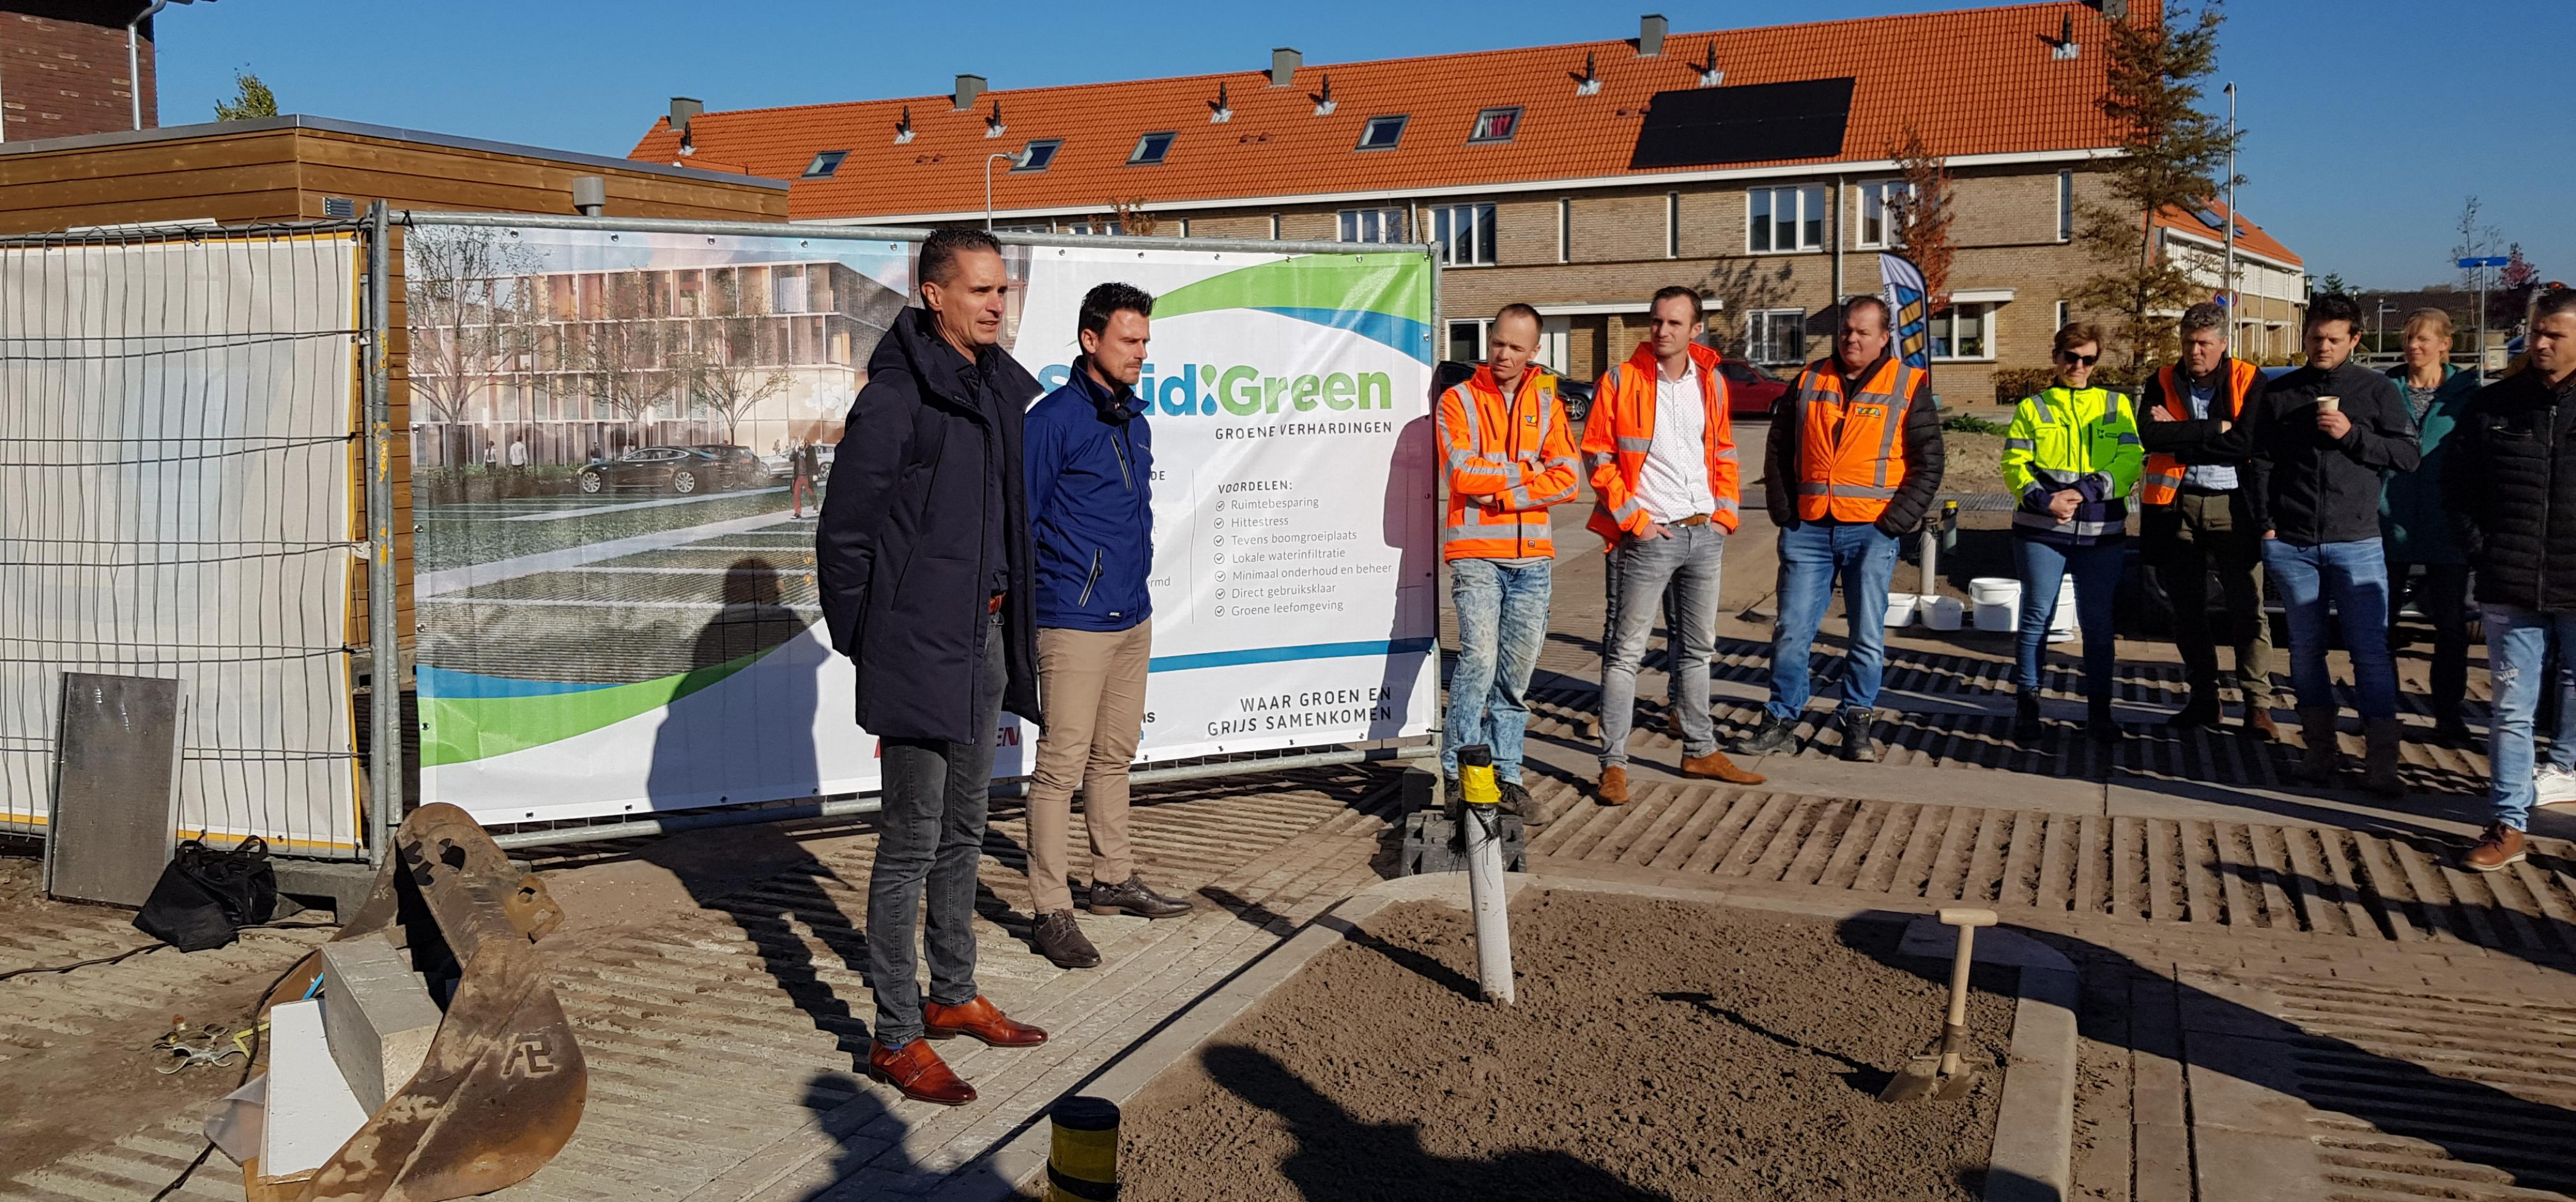 Aftrap SolidGreen tijdens productdemonstratie in klimaatadaptieve woonwijk de Liermolen